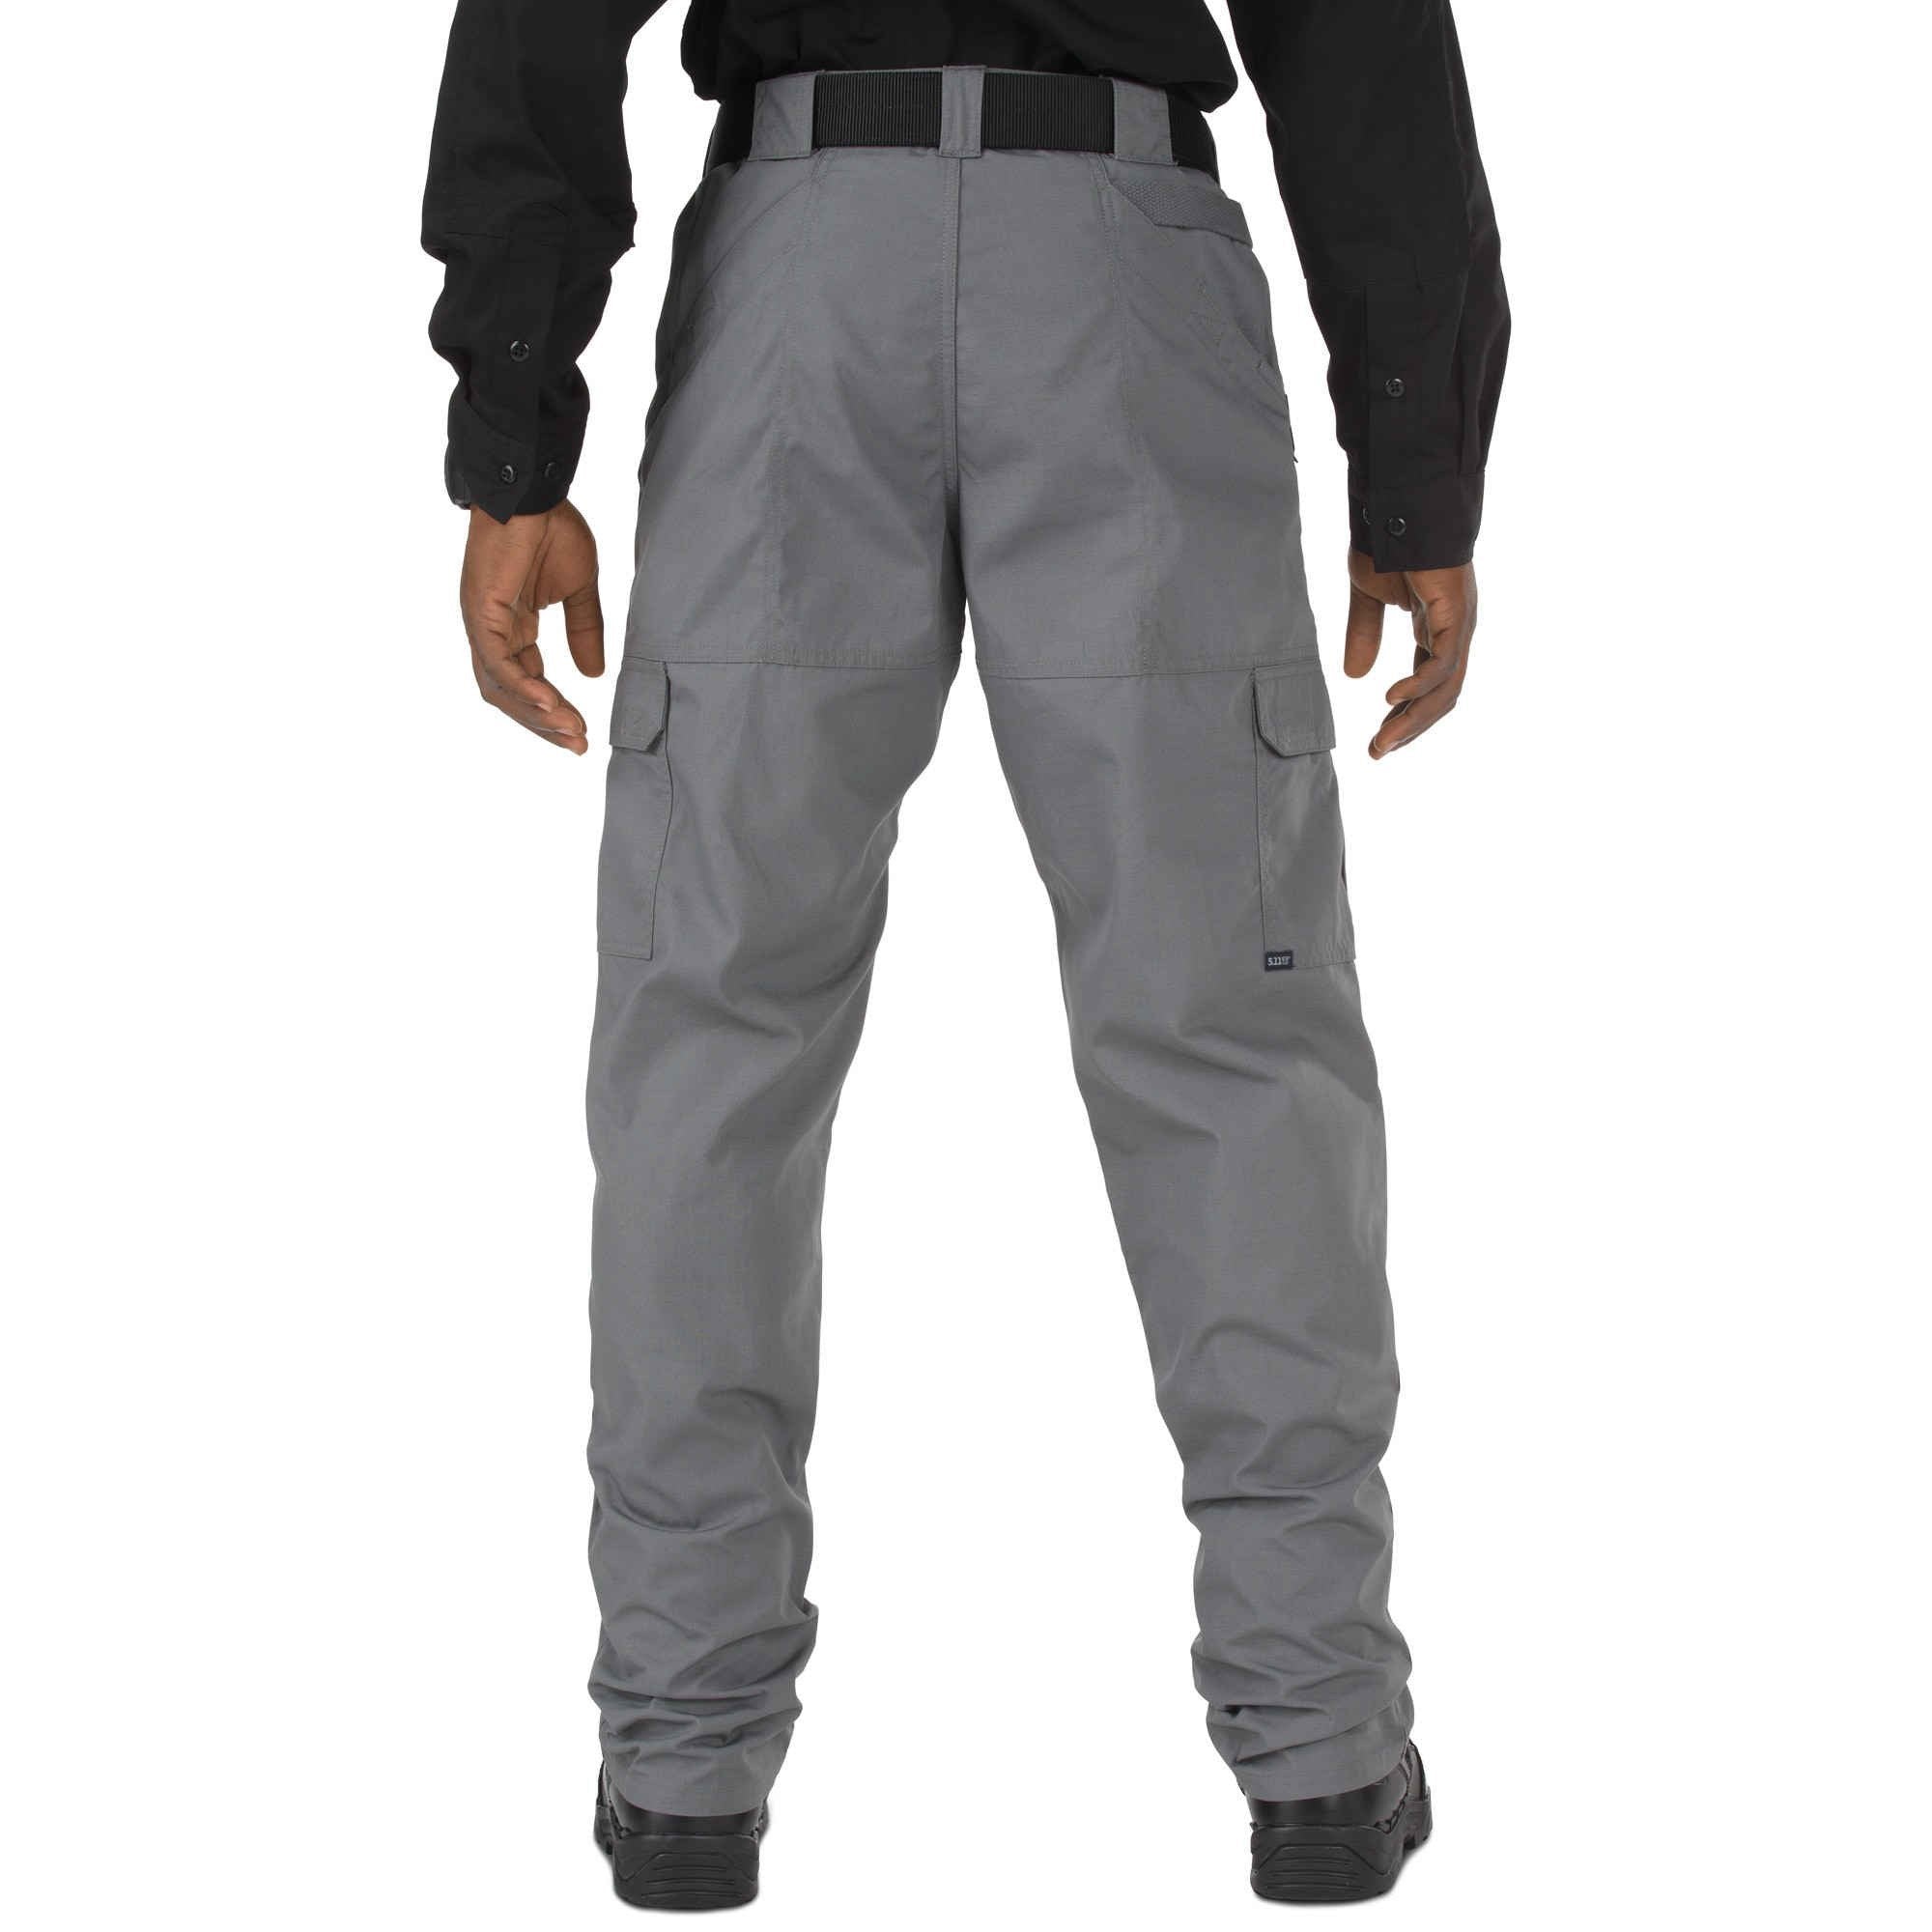 5.11 Tactical Taclite Pro Pants - Storm Pants 5.11 Tactical Tactical Gear Supplier Tactical Distributors Australia